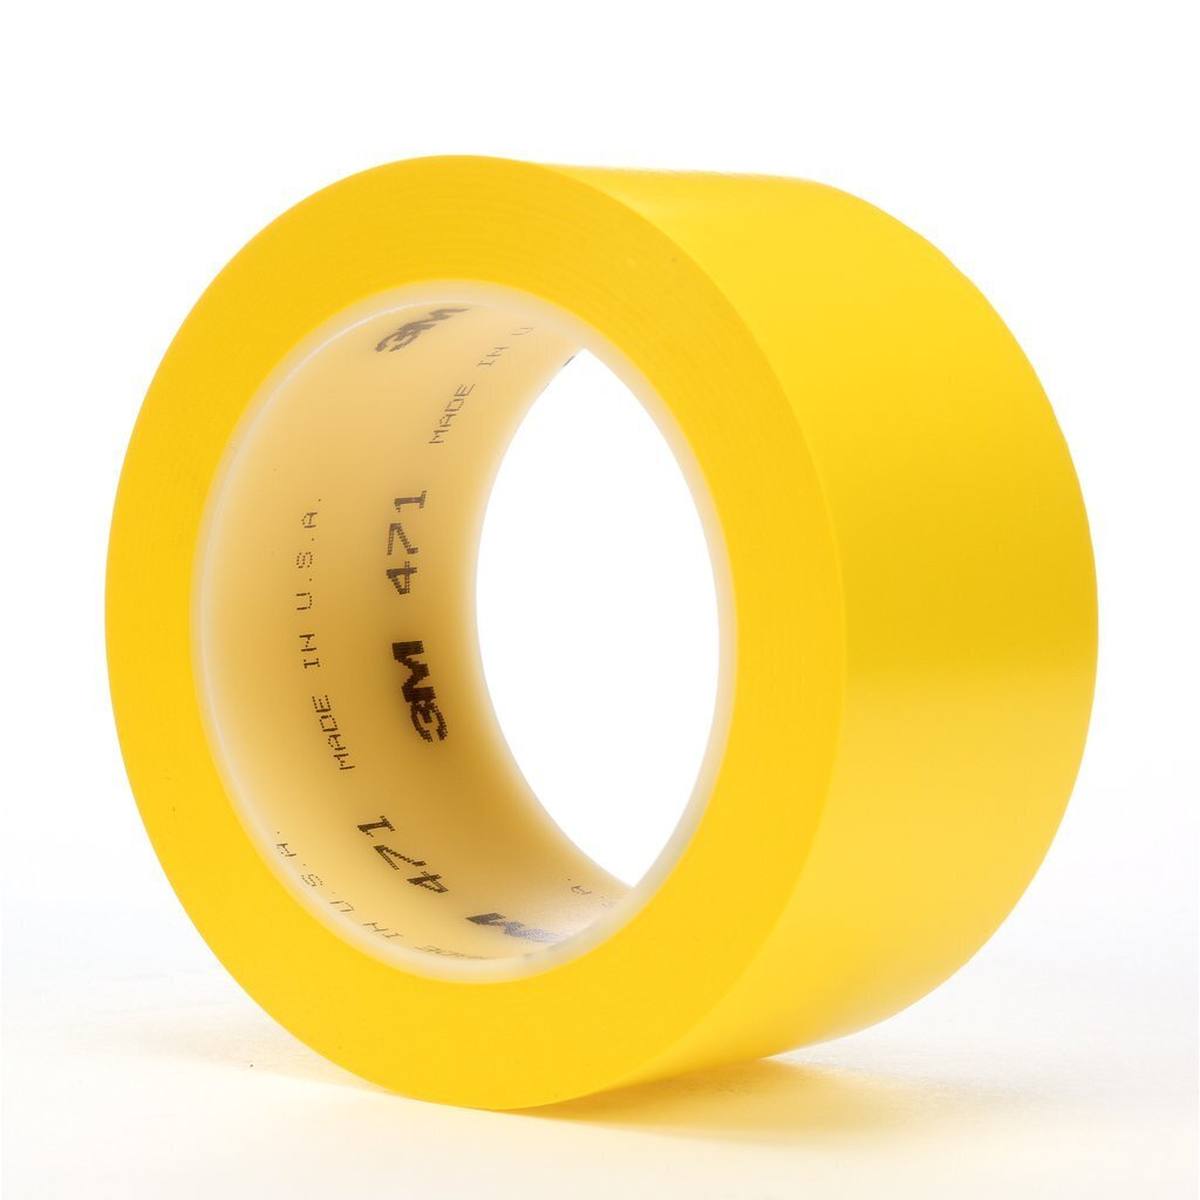 Nastro adesivo 3M in PVC morbido 471 F, giallo, 50 mm x 33 m, 0,13 mm, confezionato singolarmente e in modo pratico